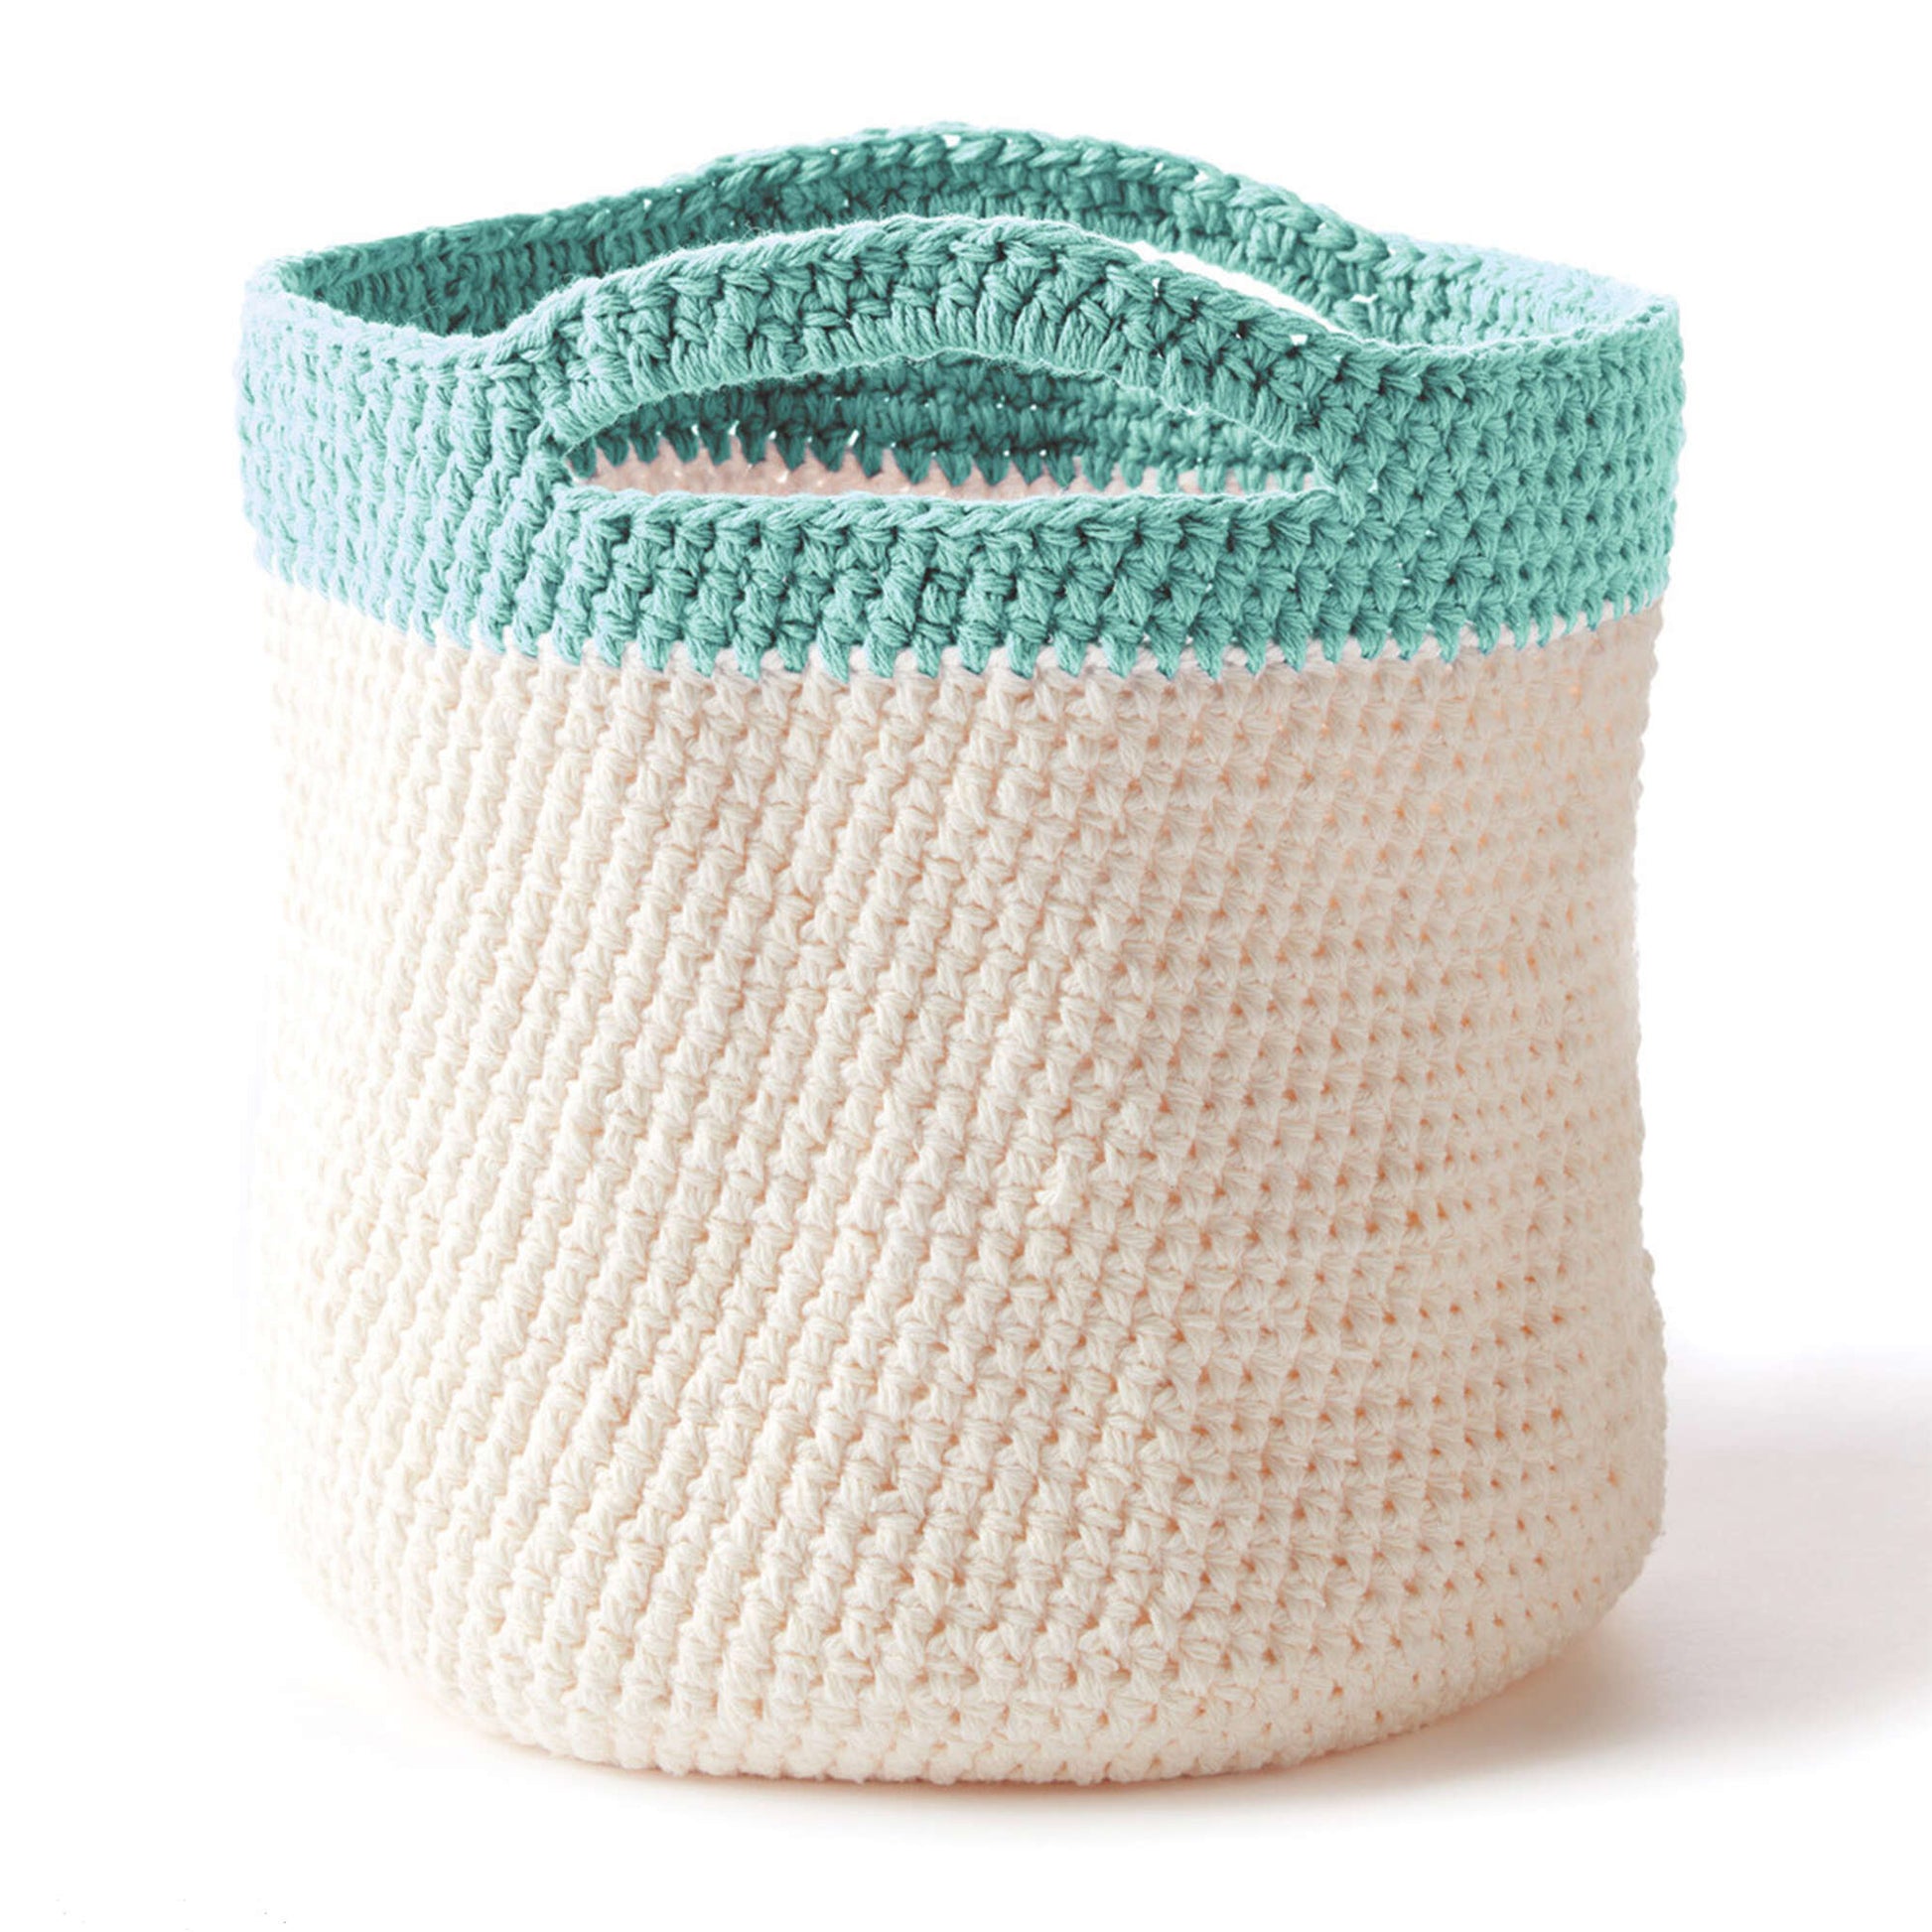 Bernat Crochet Handy Basket Crochet Bag made in Bernat Handicrafter Cotton yarn